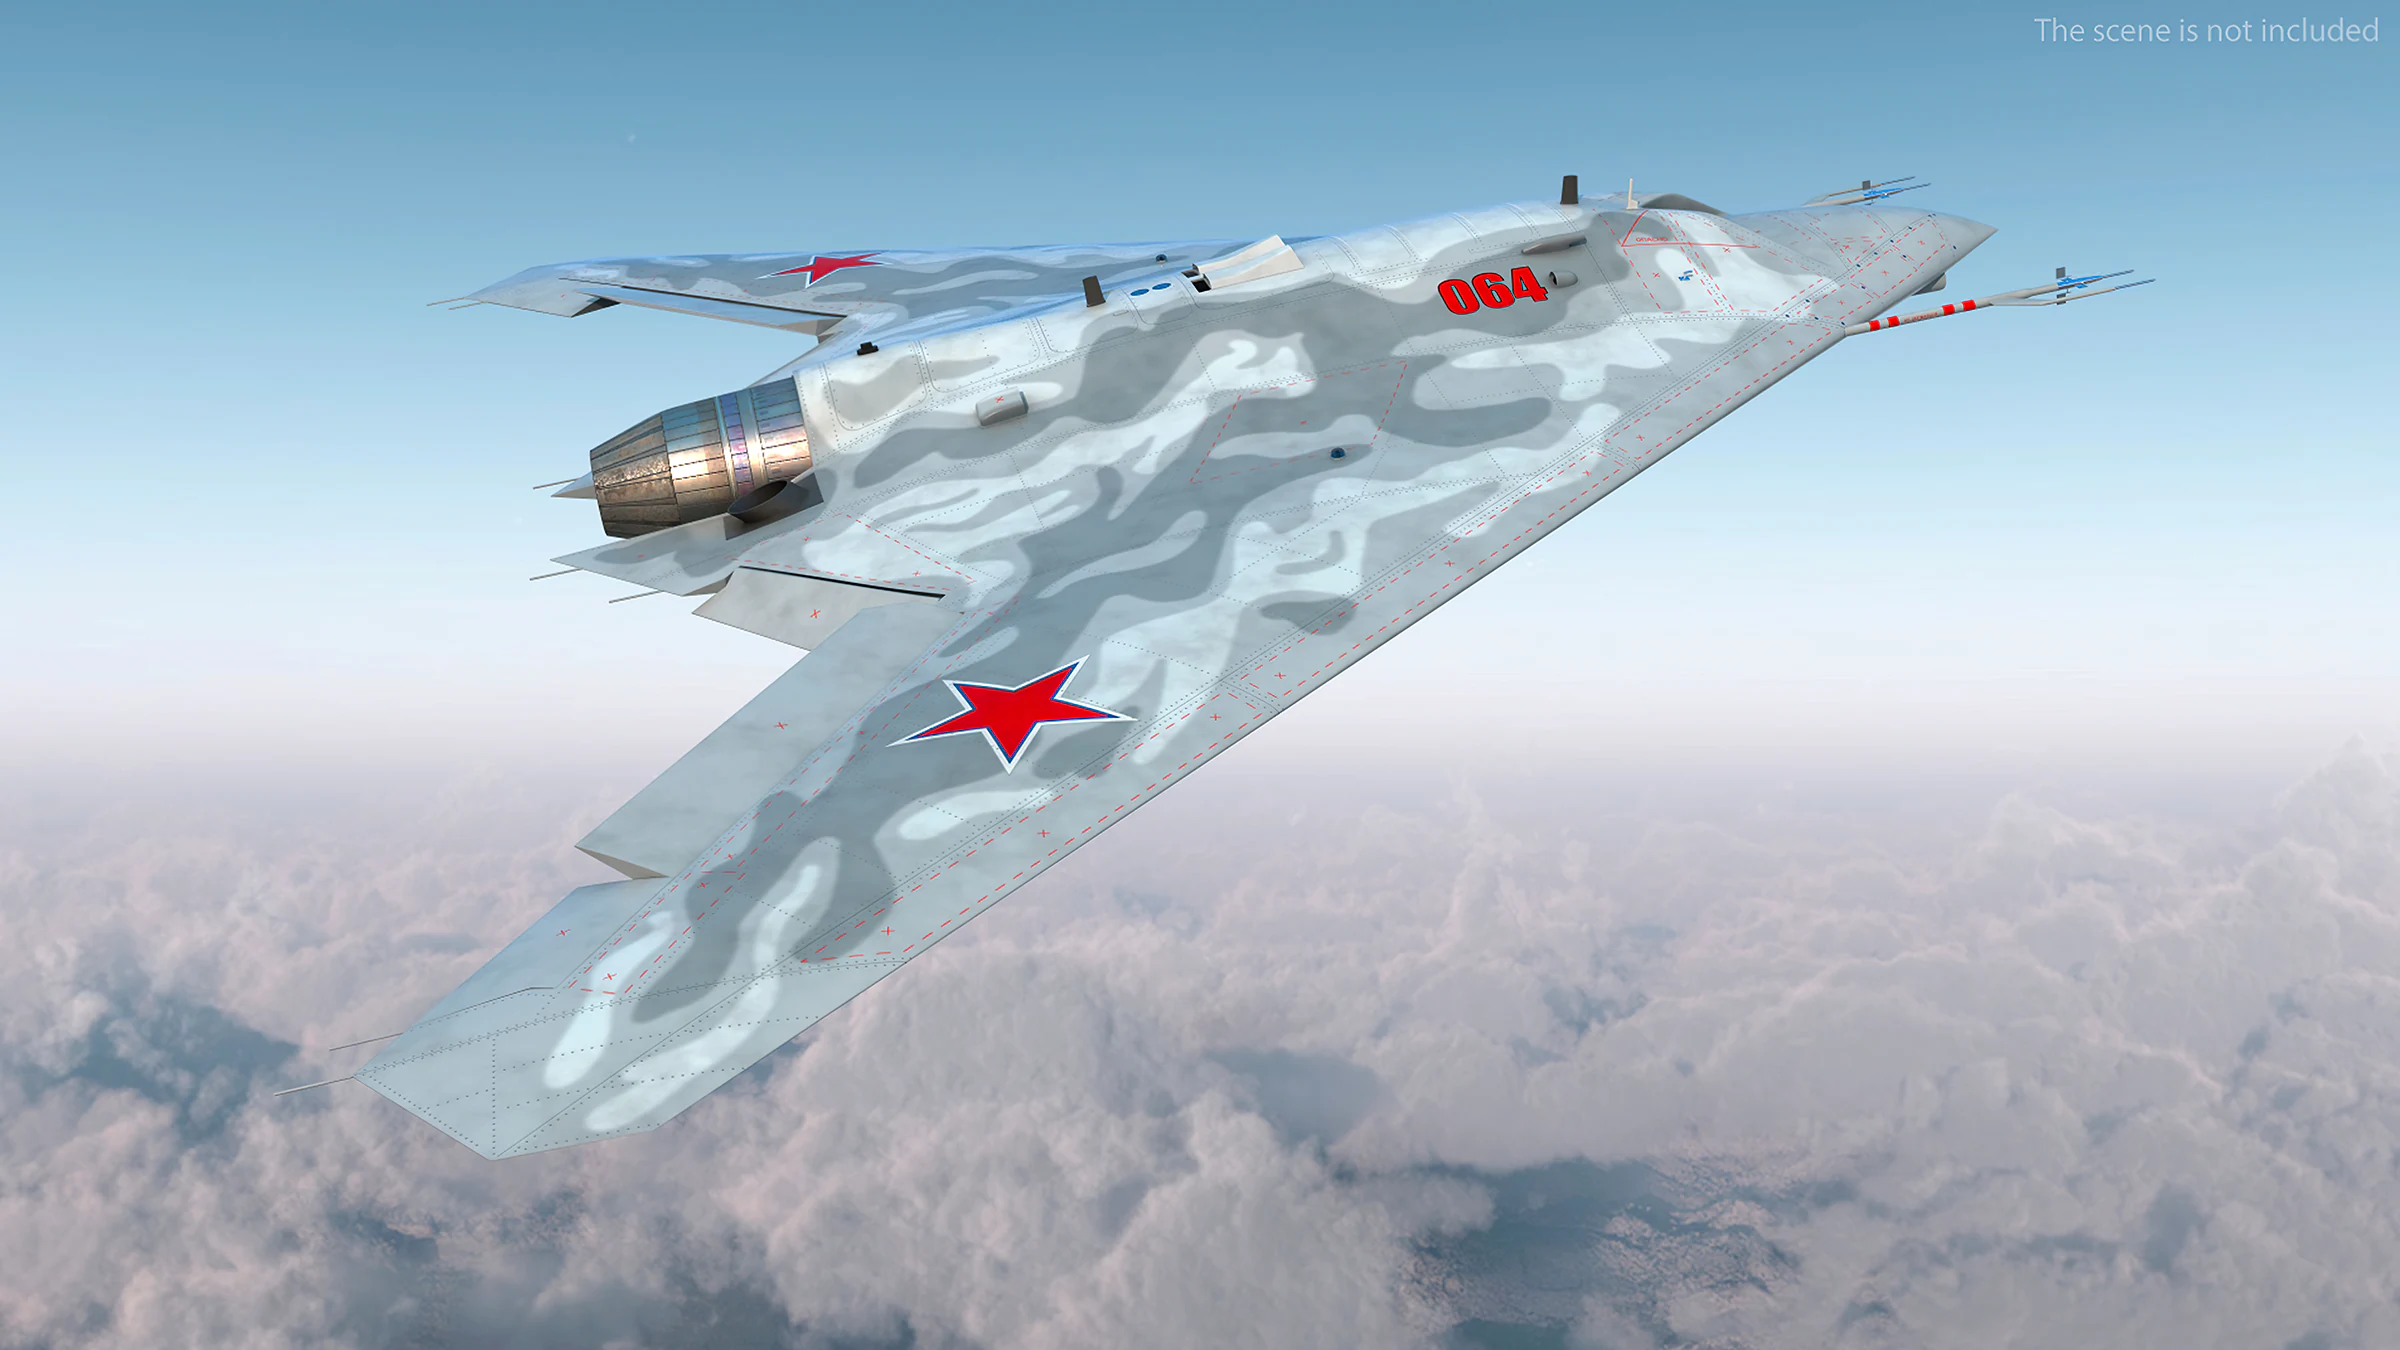 Sukhoi S-70 Okhotnik-B: Avance tecnológico en drones furtivos rusos